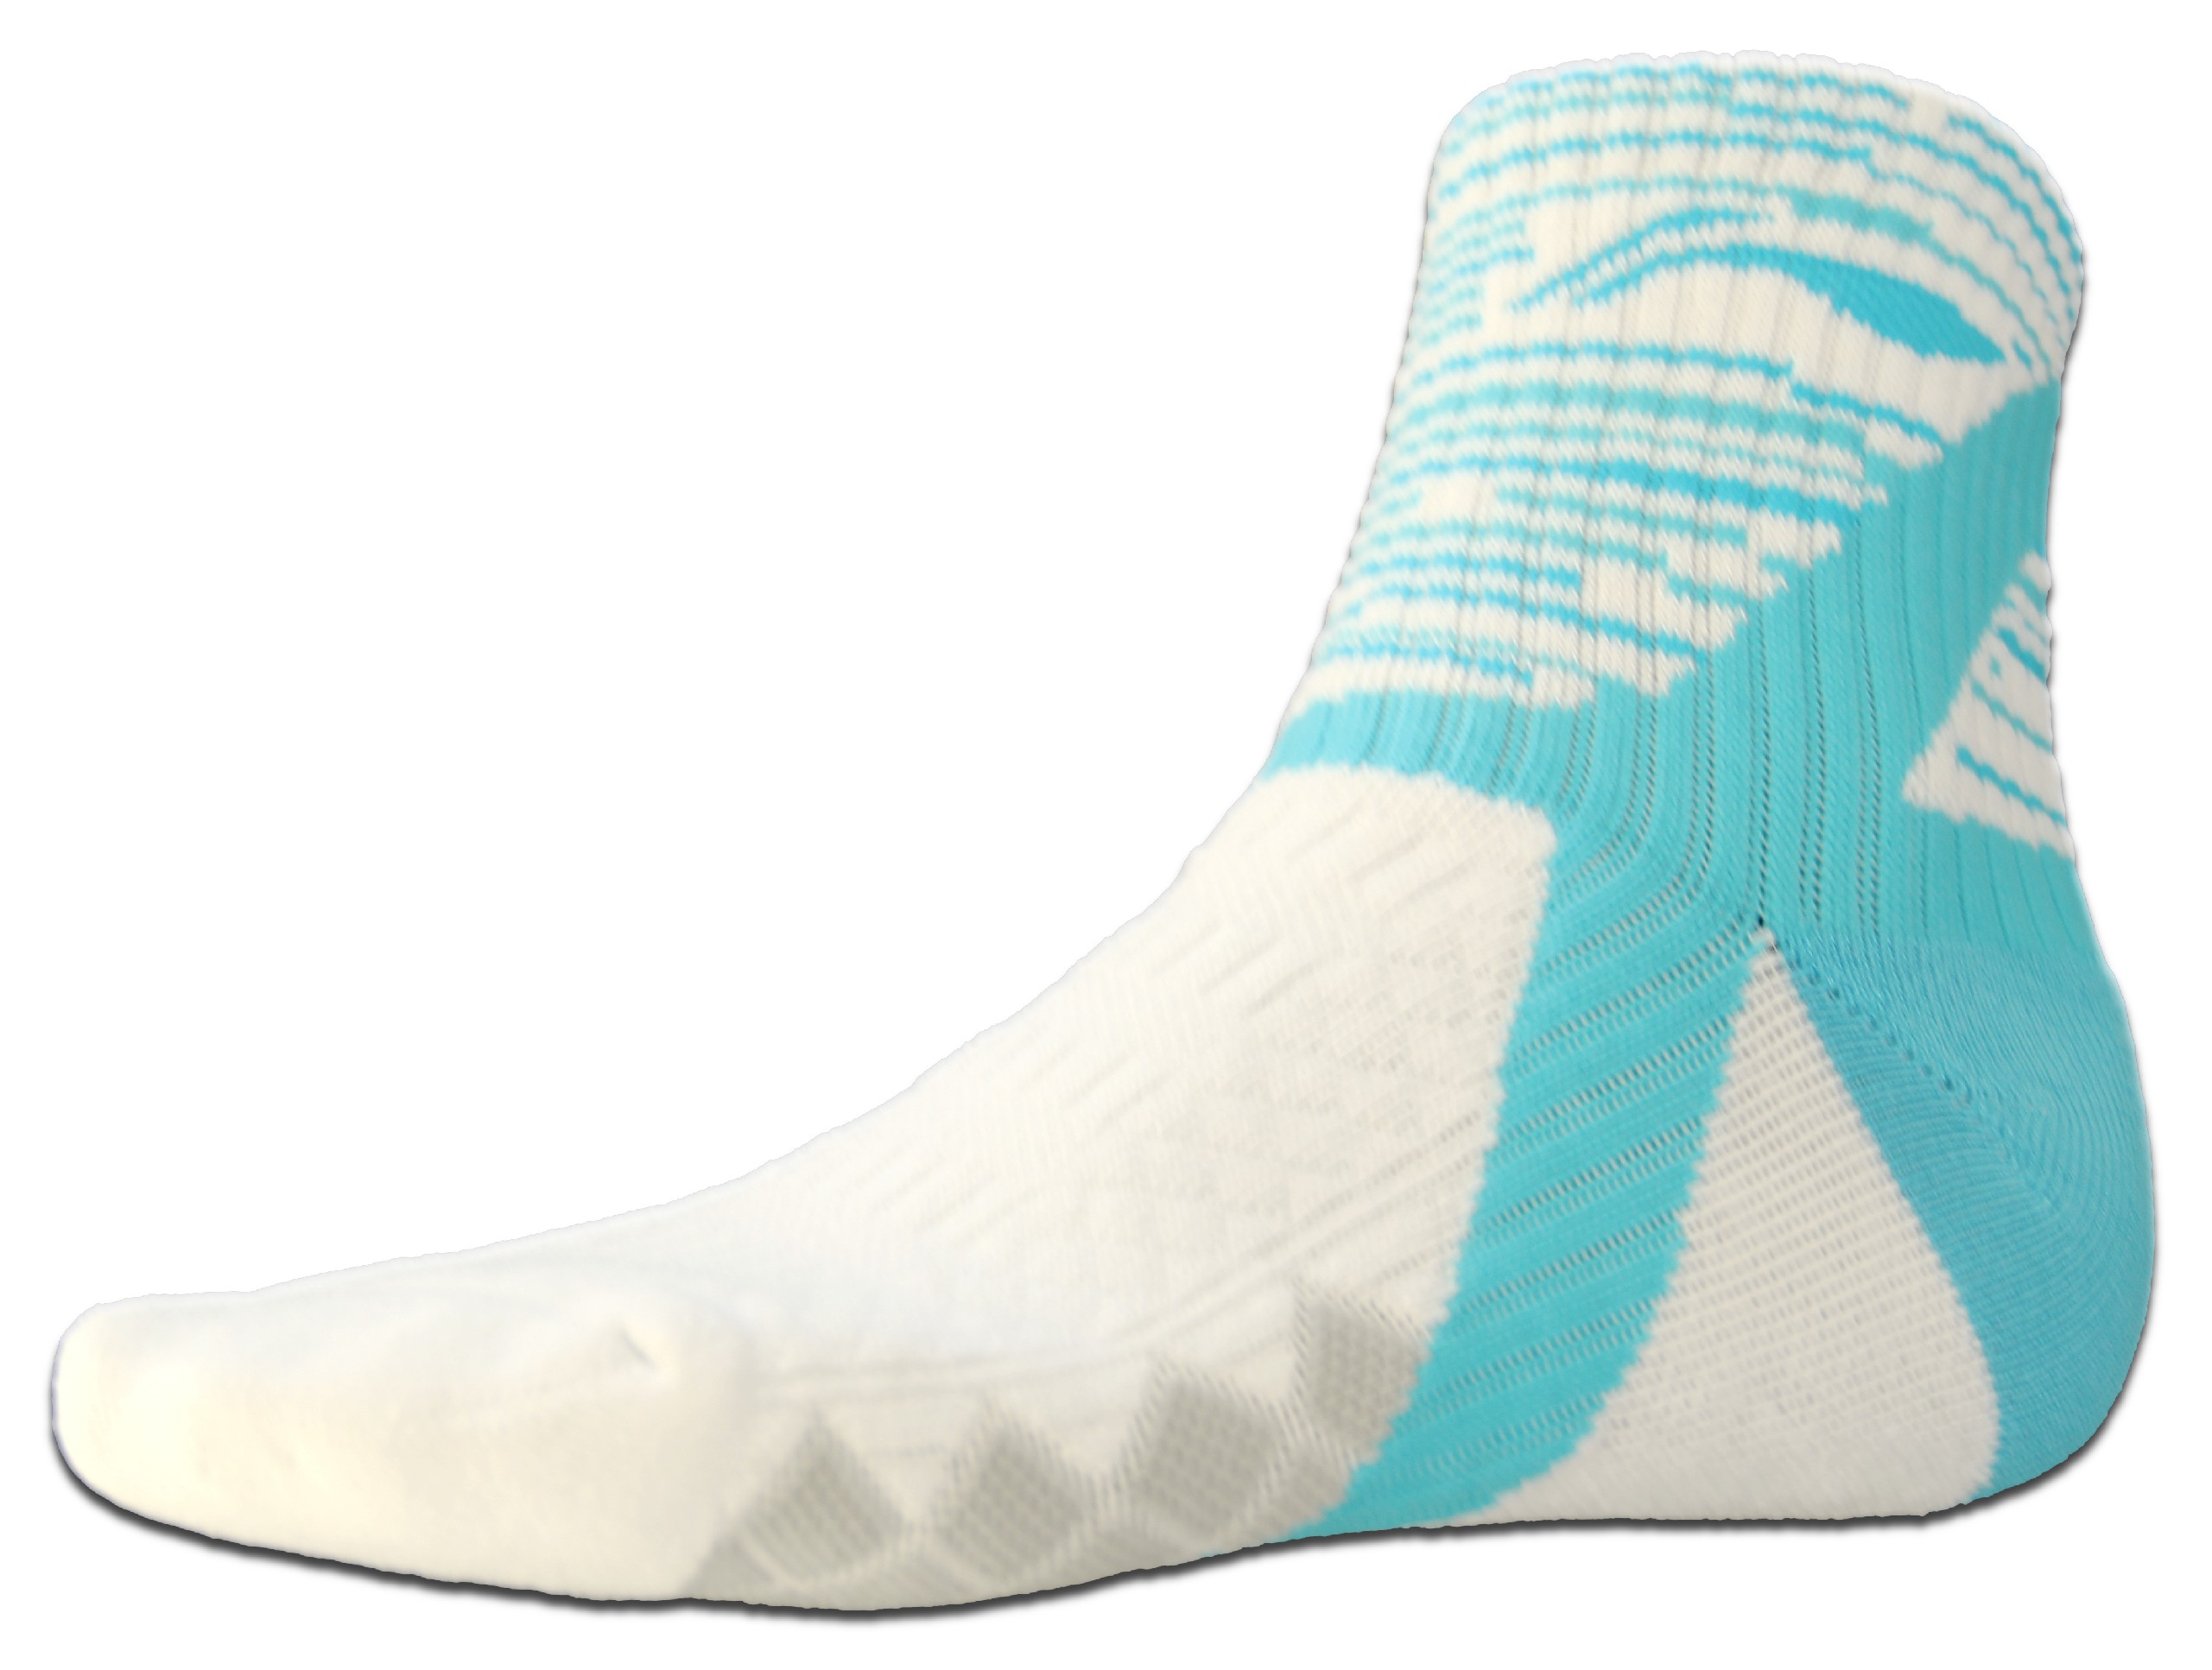 Ponožky Comfort 2017/18, azzura - světle modrá